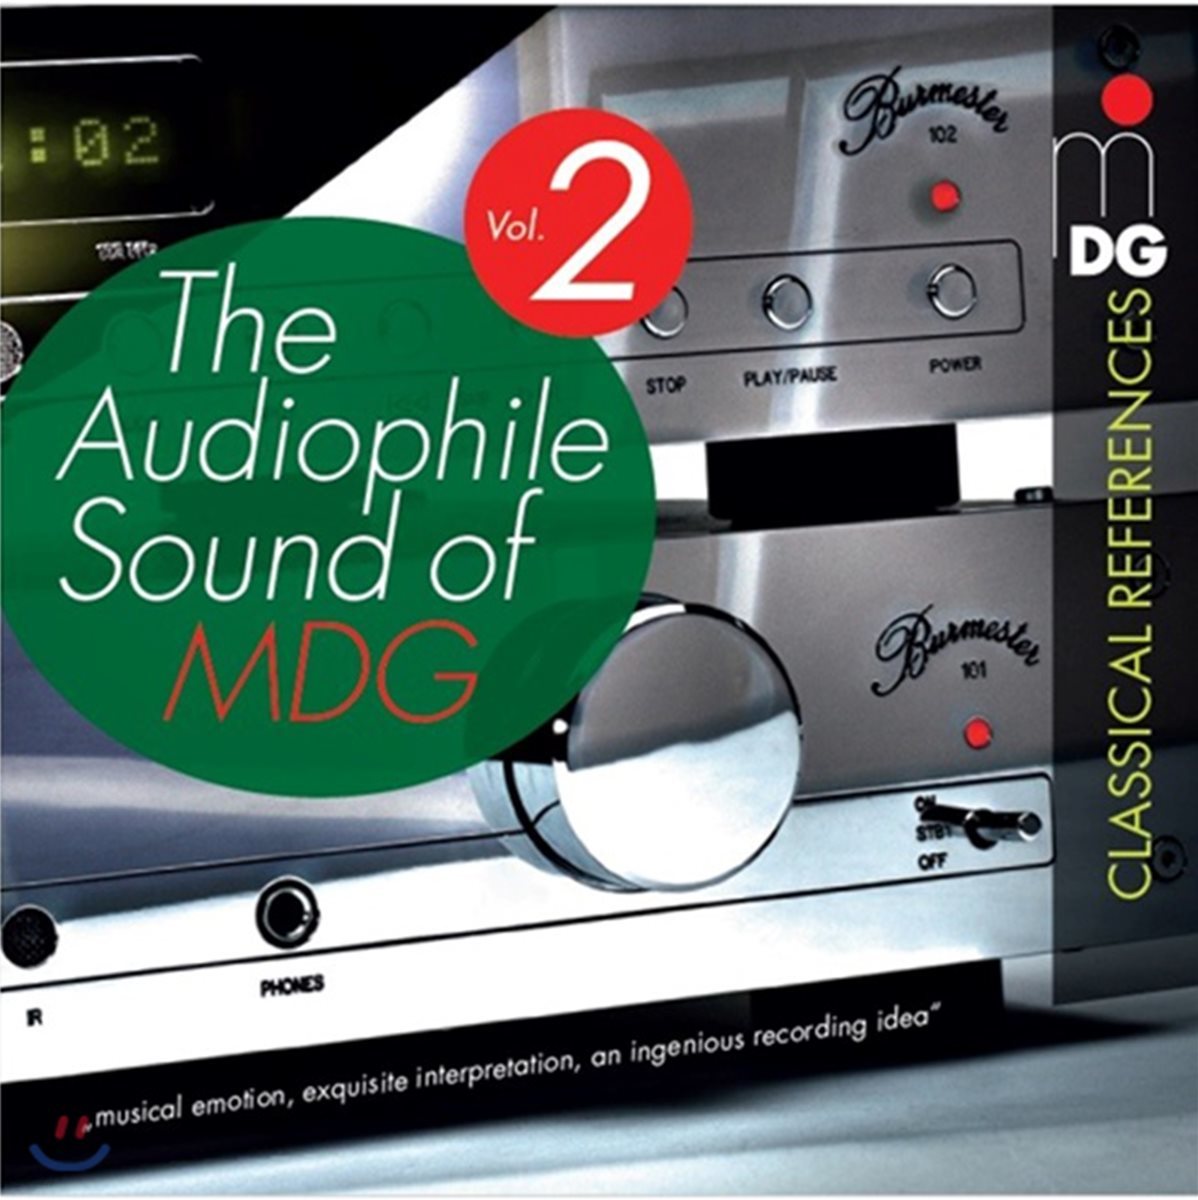 MDG 레이블 샘플러 2집 - 베스트 녹음 모음집 (The Audiophile Sound of MDG Vol.2) [2LP]